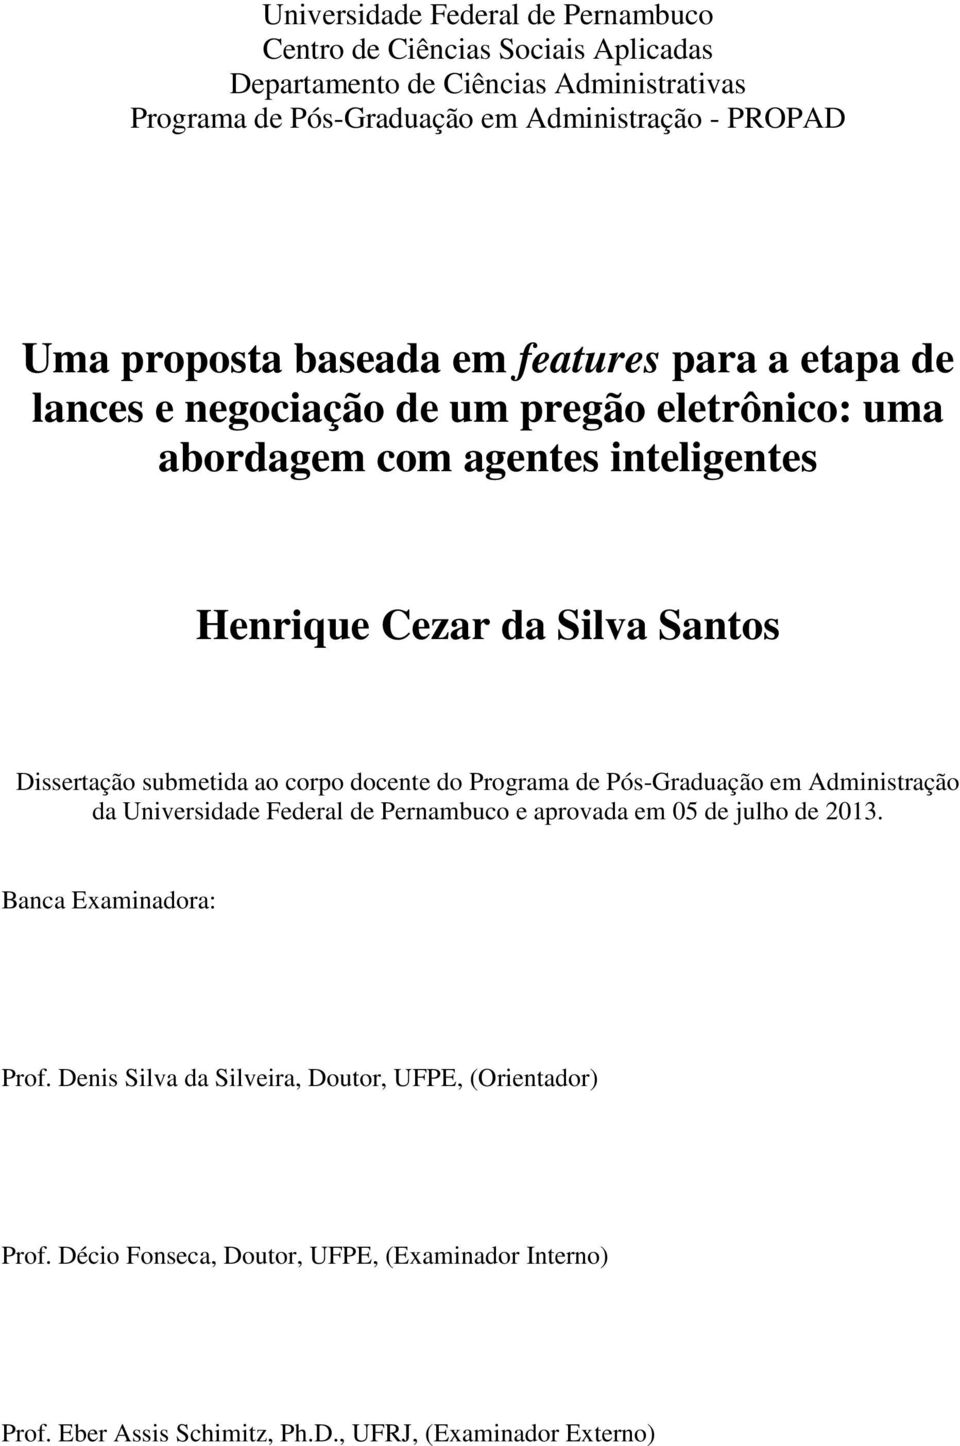 Dissertação submetida ao corpo docente do Programa de Pós-Graduação em Administração da Universidade Federal de Pernambuco e aprovada em 05 de julho de 2013.